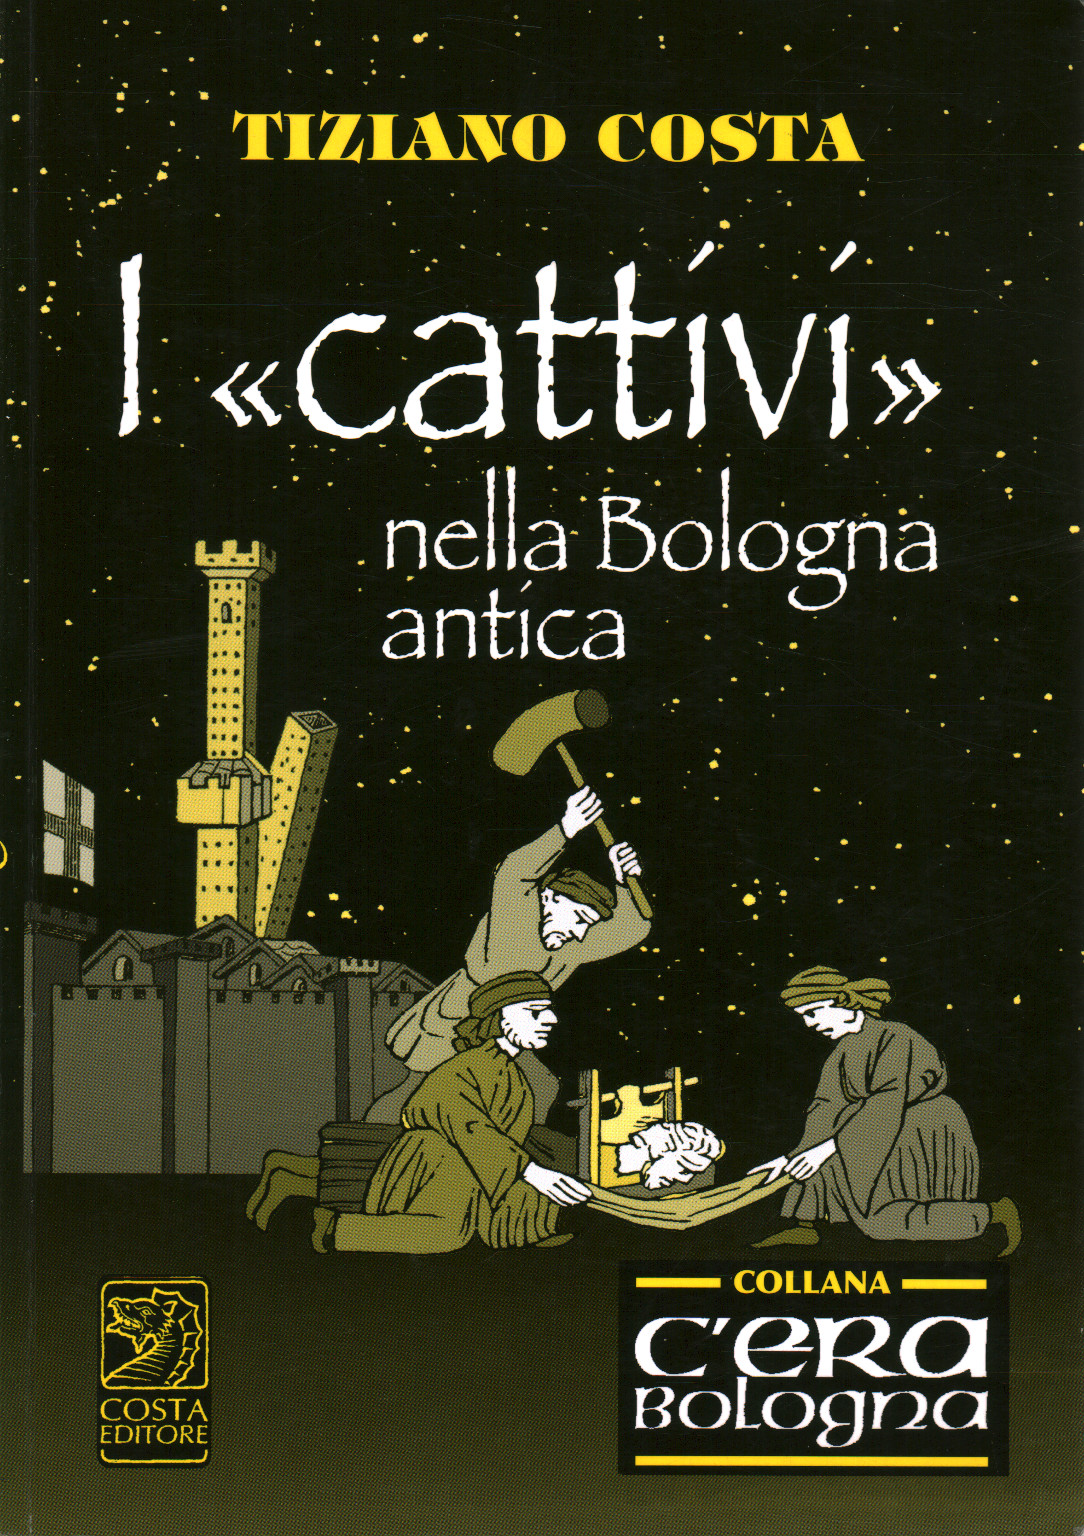 I "cattivi" nella Bologna antica, s.a.